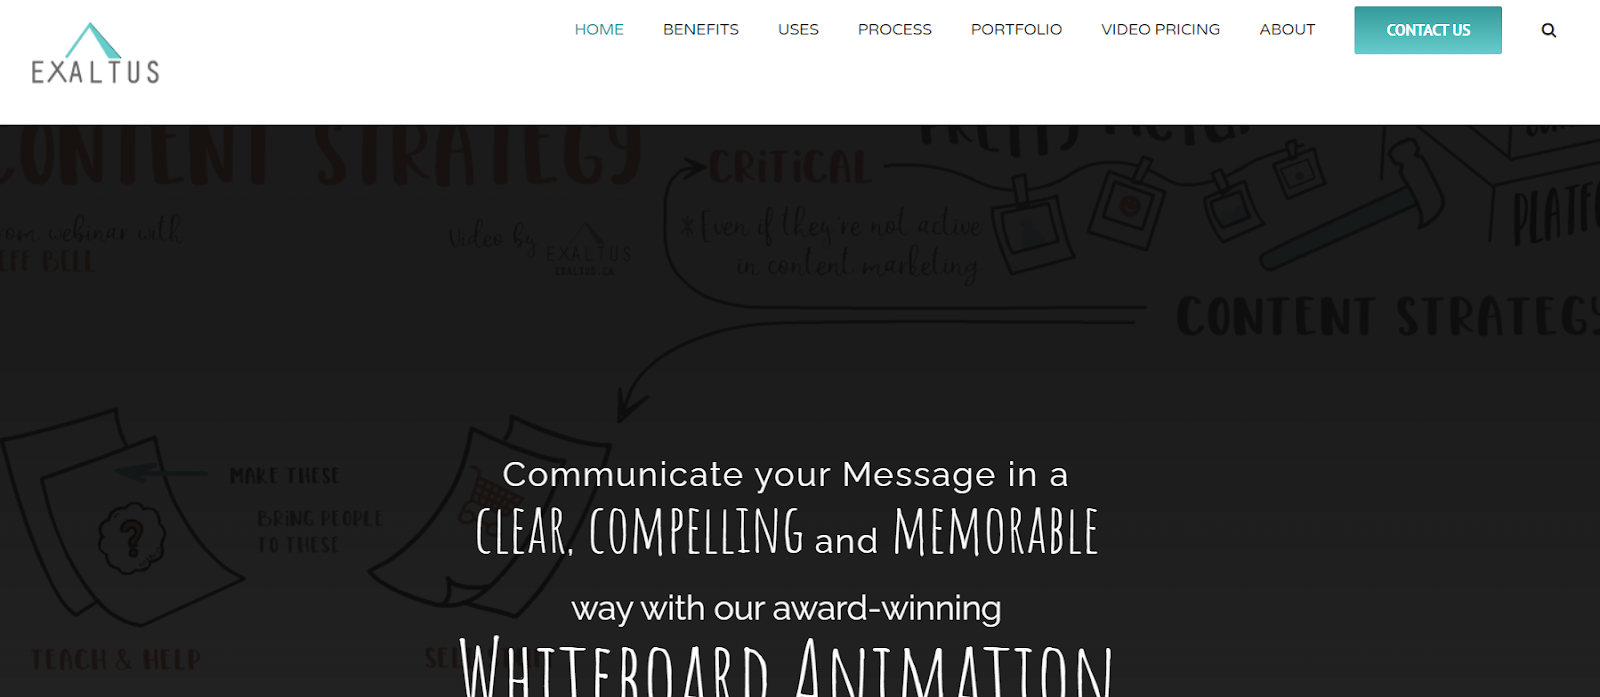 exaltus whiteboard animation company